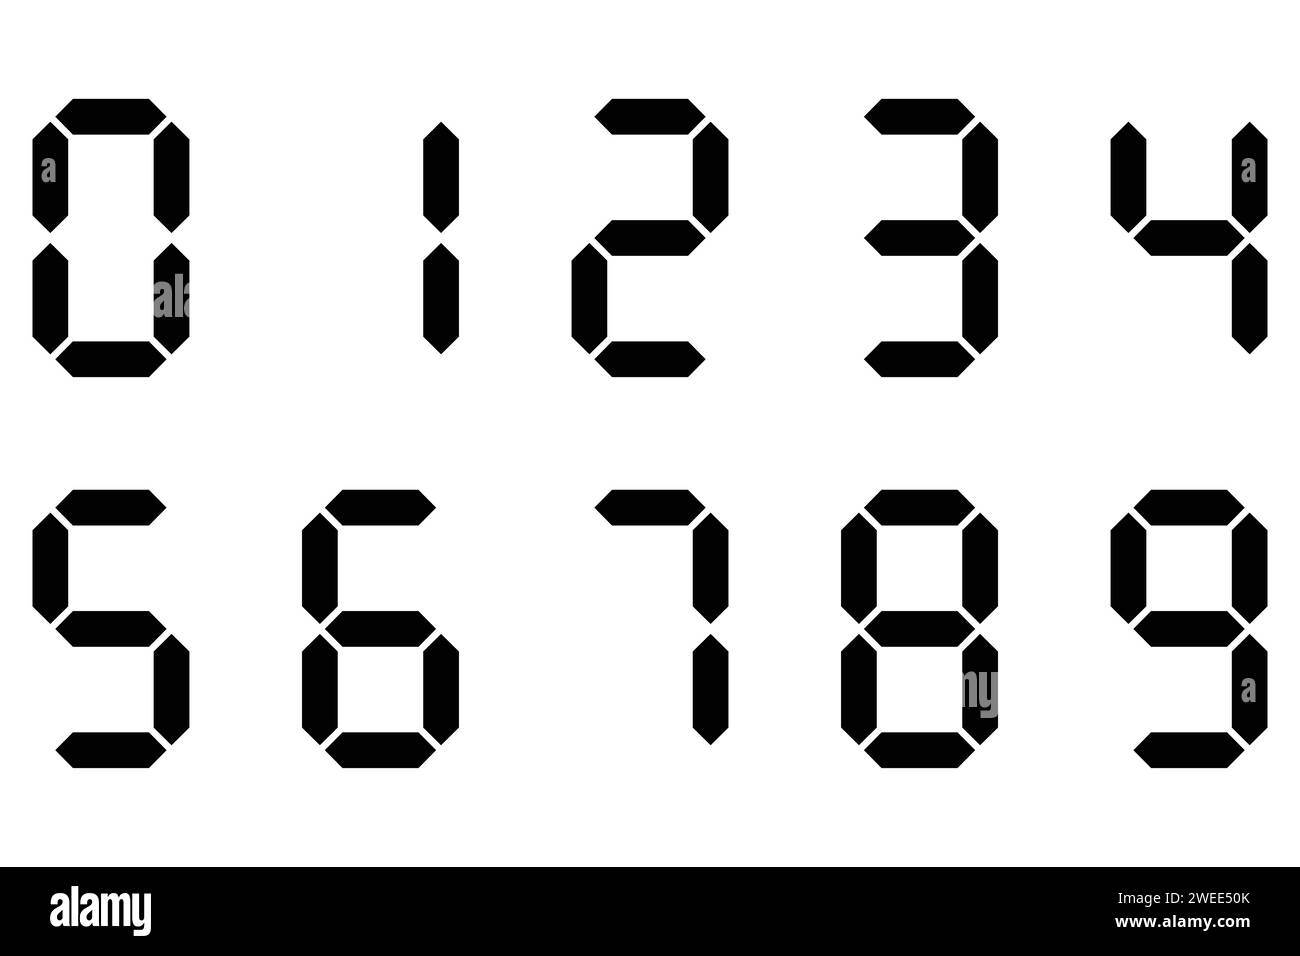 Digitale Anzeige der Ziffern. Symbolgruppe. Schwarze Zahlen, Zahlen. Anzeigetafel, Uhr, Stoppuhr, Taschenrechner, elektronisches Messgerät. Sieben Segmente. Vektorbild Stock Vektor